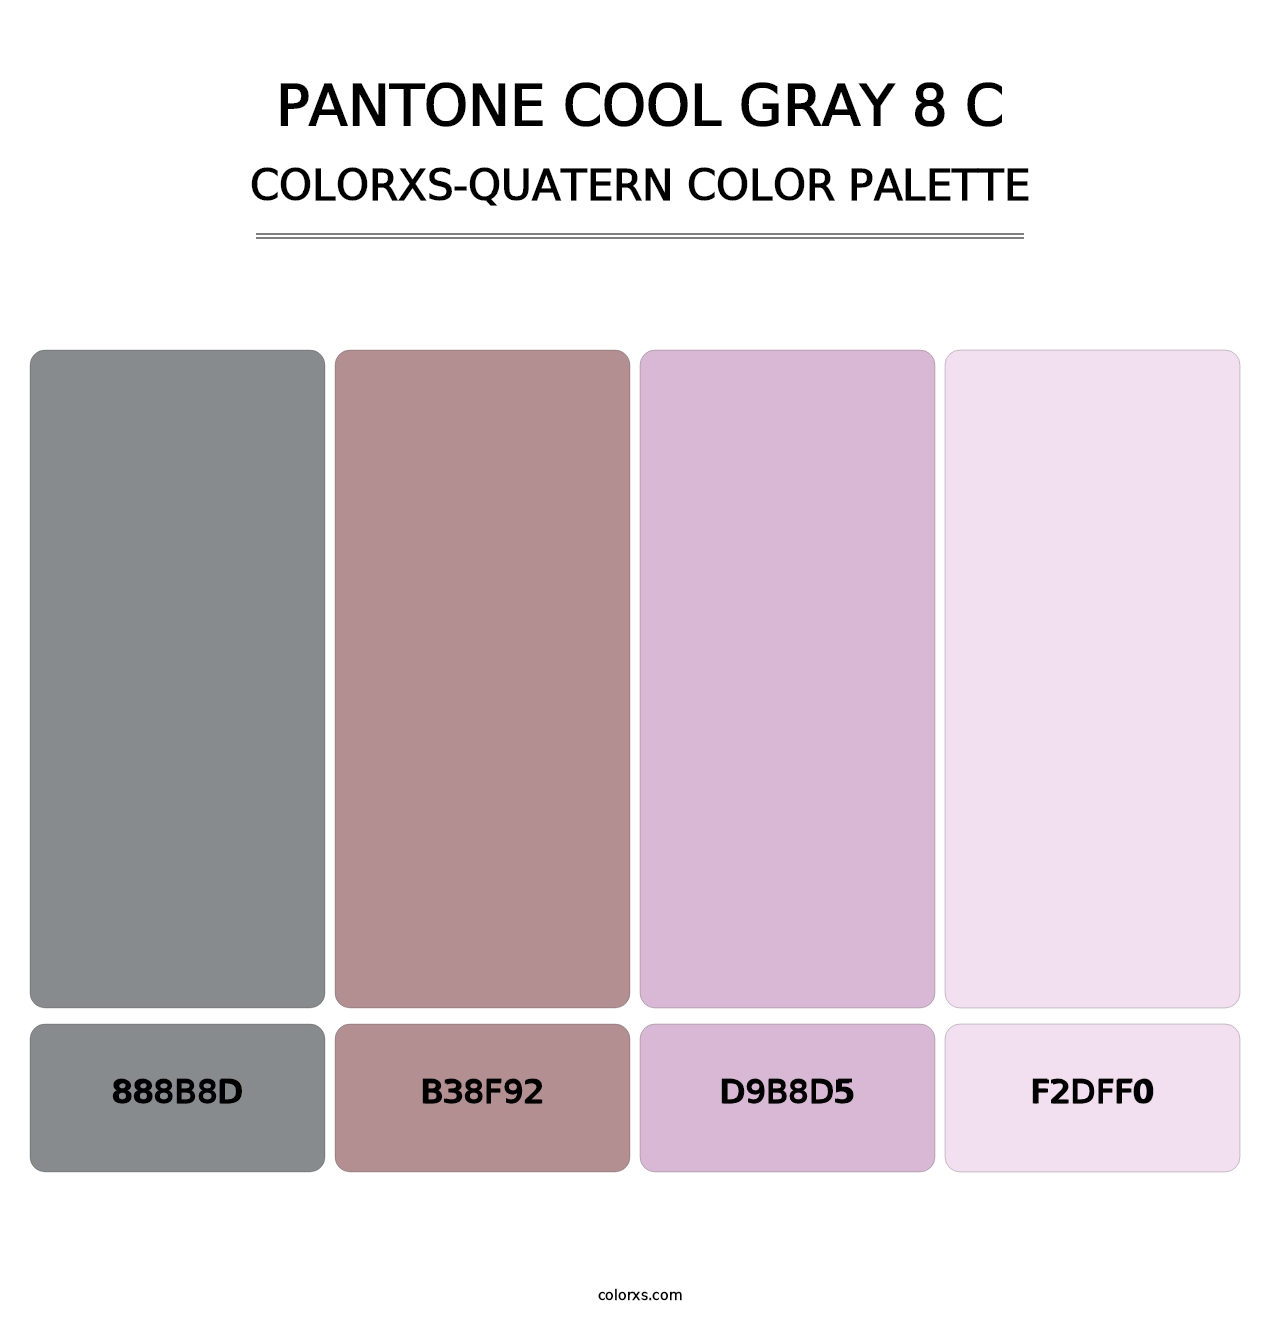 PANTONE Cool Gray 8 C - Colorxs Quatern Palette